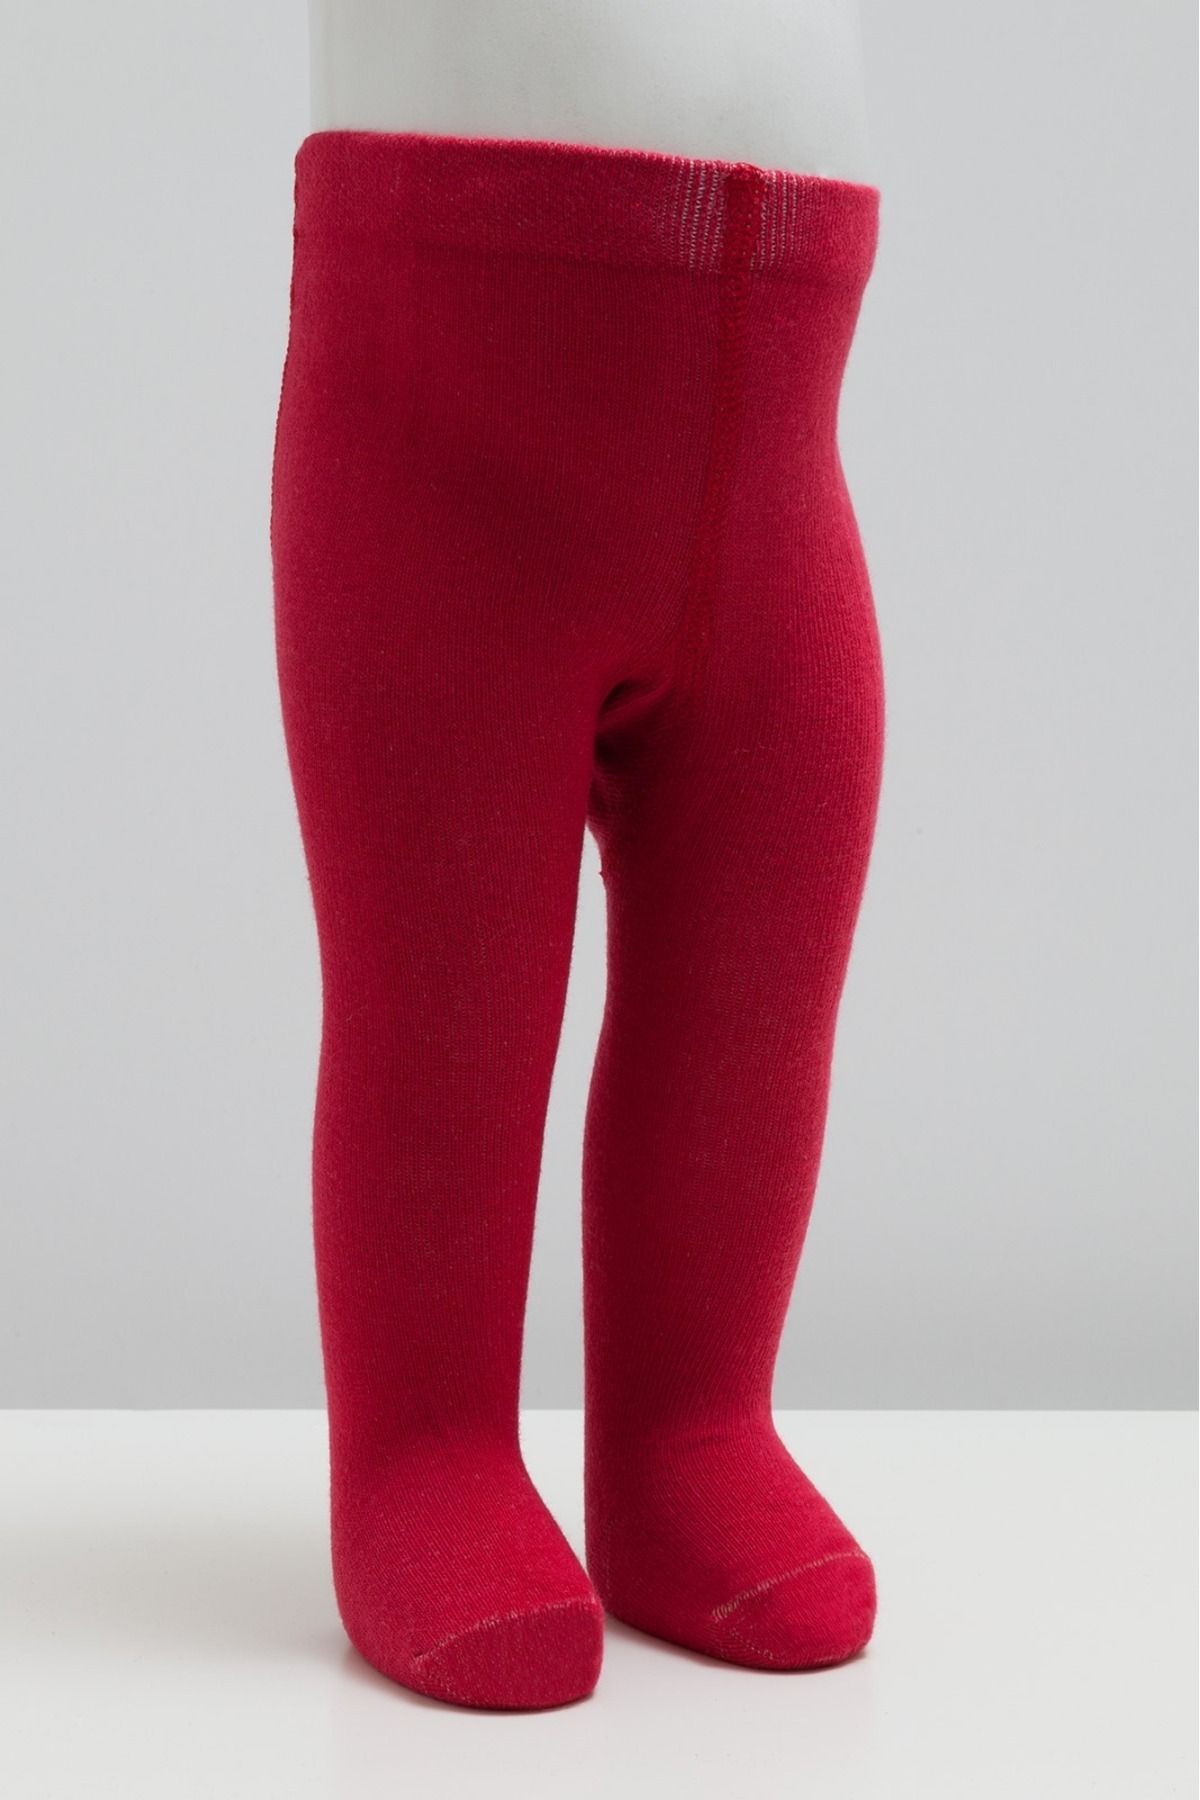 Caramell Kız Düz Kırmızı Mevsimsel Kalınlıkta Külotlu Çorap